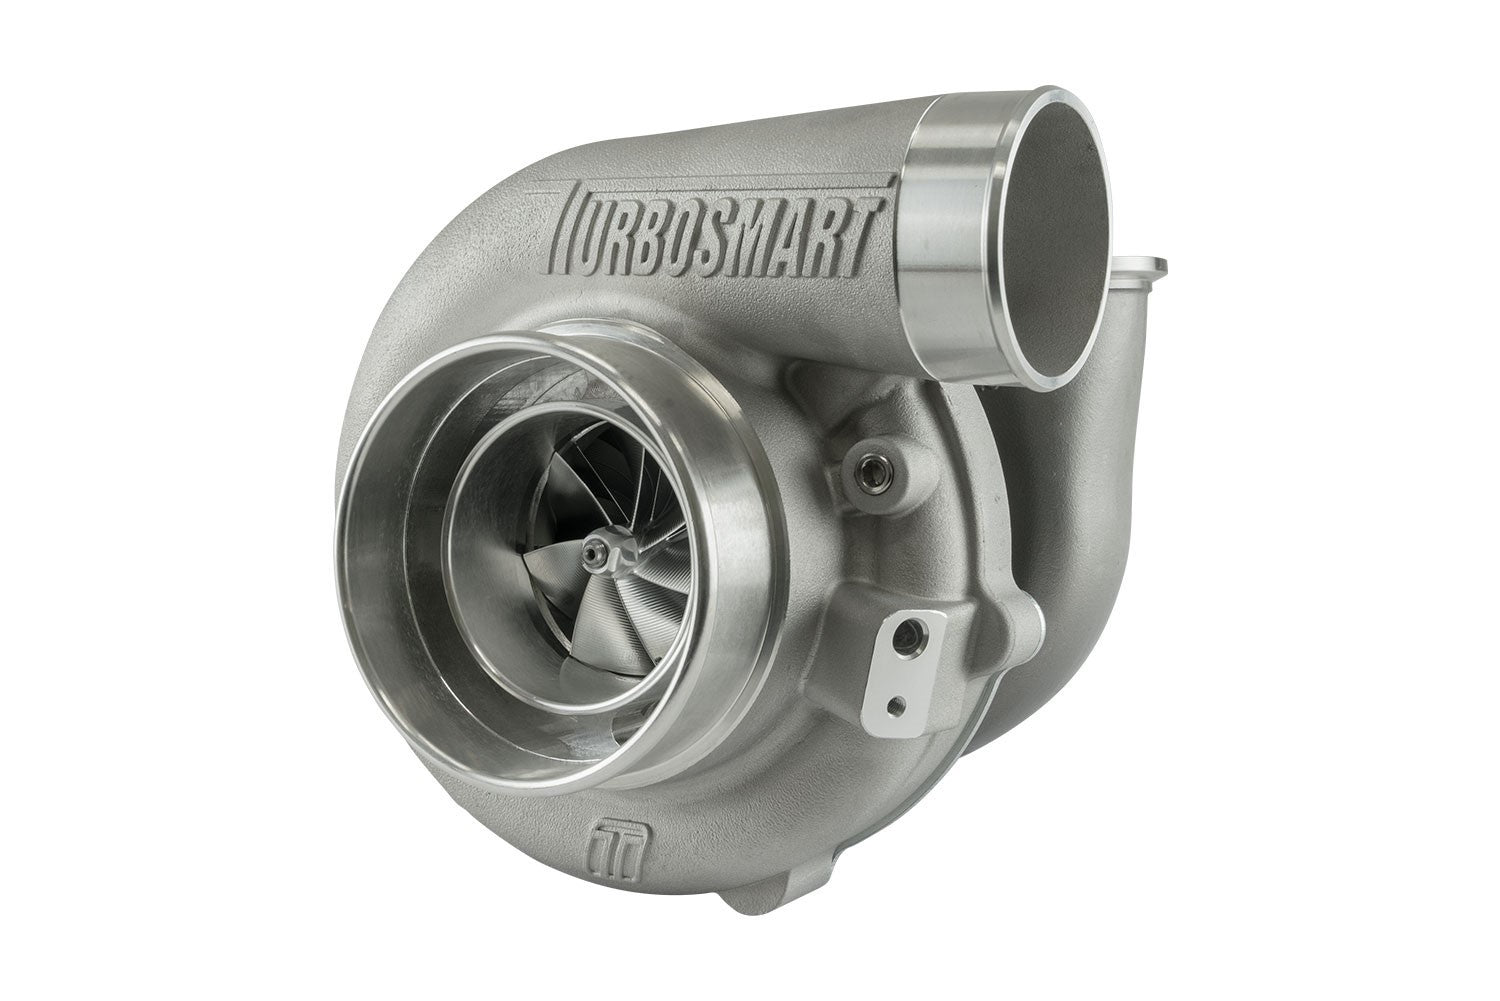 Turbosmart Oil Cooled 6262 V-Band Inlet/Outlet A/R 0.82 External Wastegate Turbocharger TS-1-6262VB082E